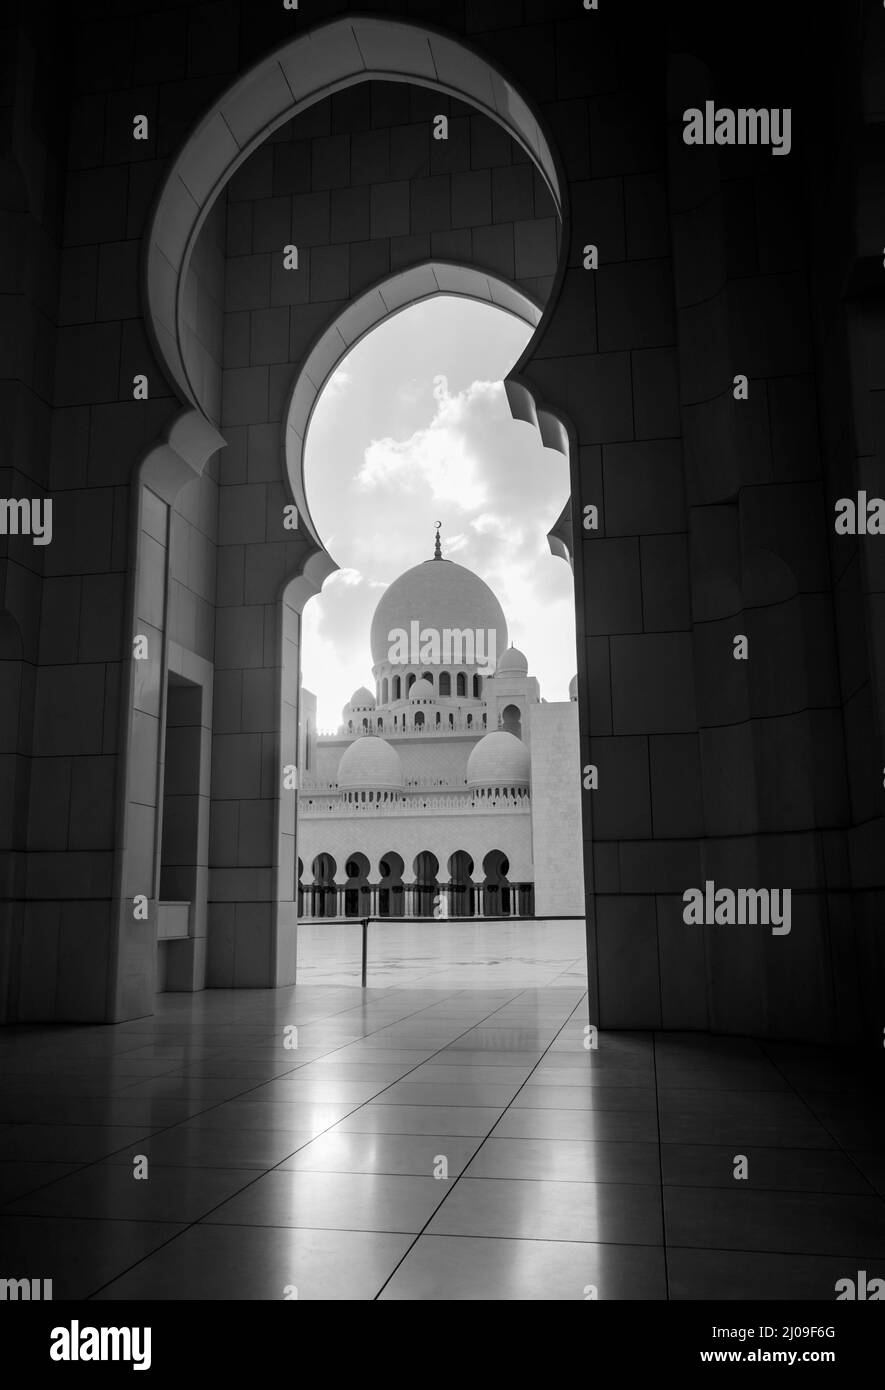 Una vista di una cupola della Moschea Sheikh Zayed attraverso un arco. Bella e magnifica moschea da Abu dhabi. Foto in bianco e nero Foto Stock